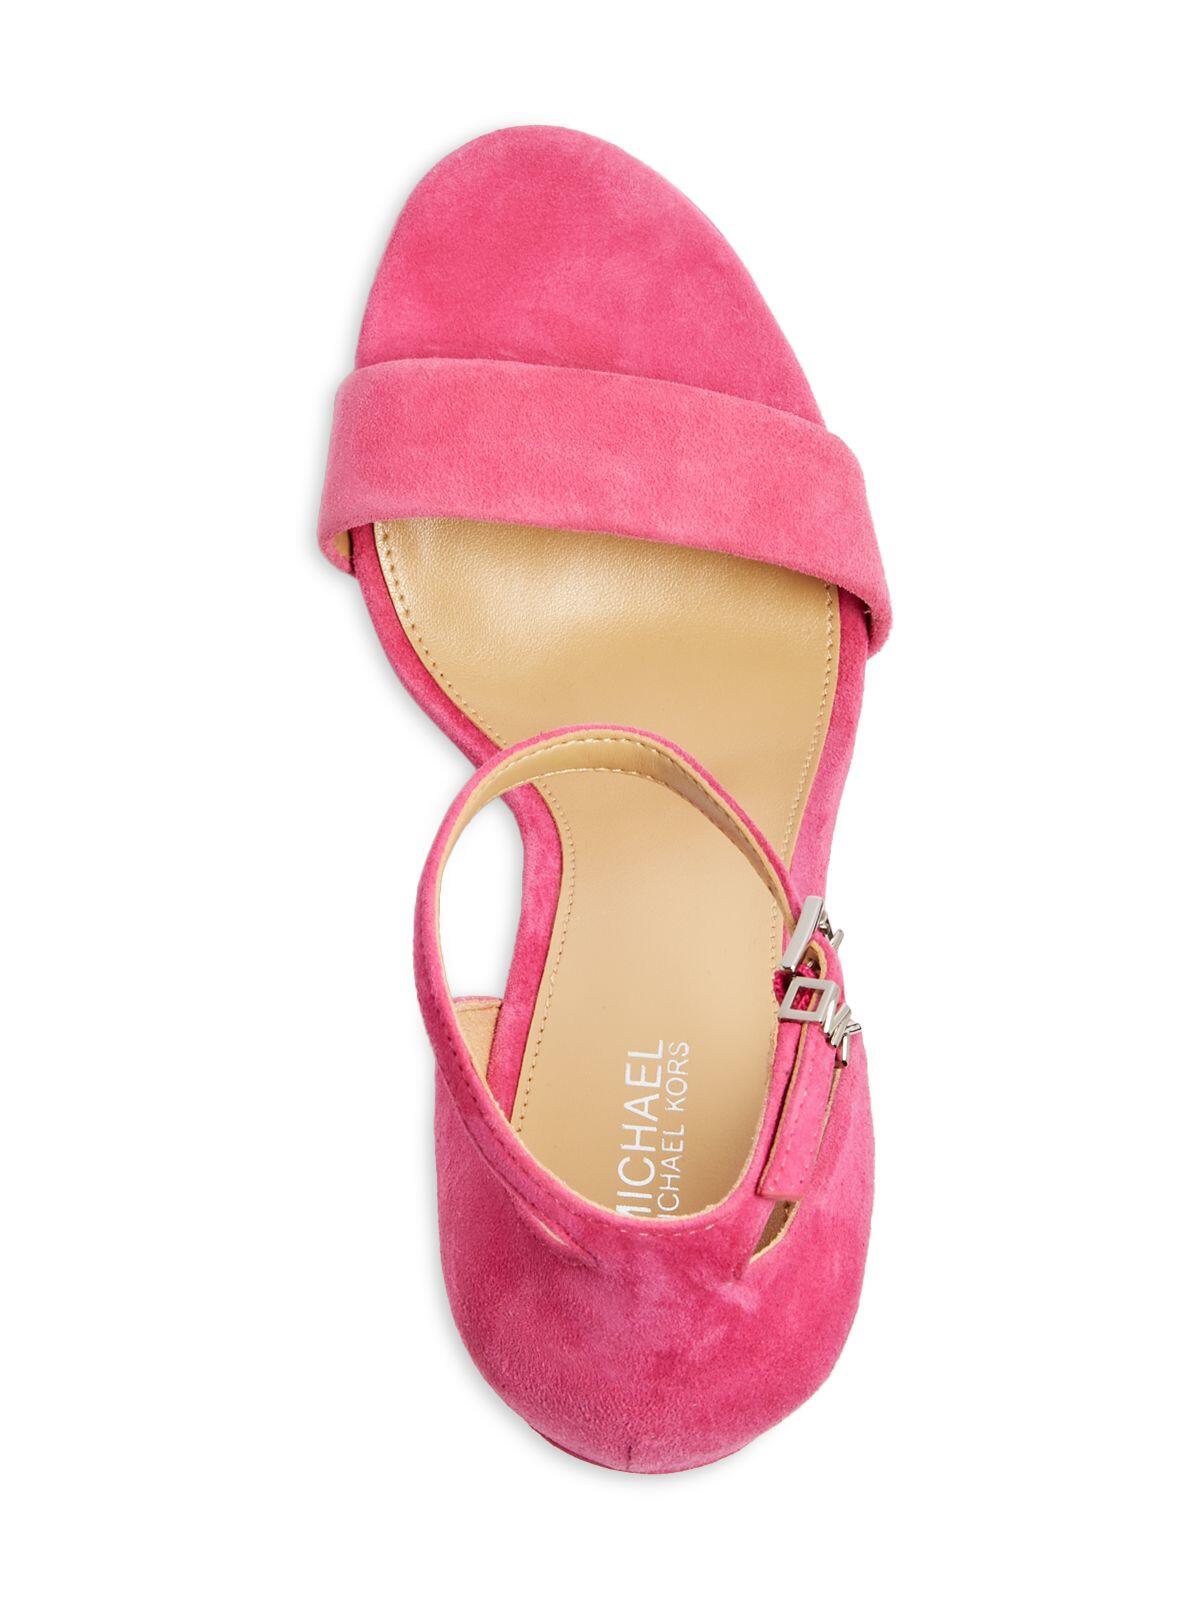 MICHAEL MICHAEL KORS Womens Pink Ankle Strap Jordyn Open Toe Stiletto Buckle Leather Dress Heeled Sandal 5.5 M